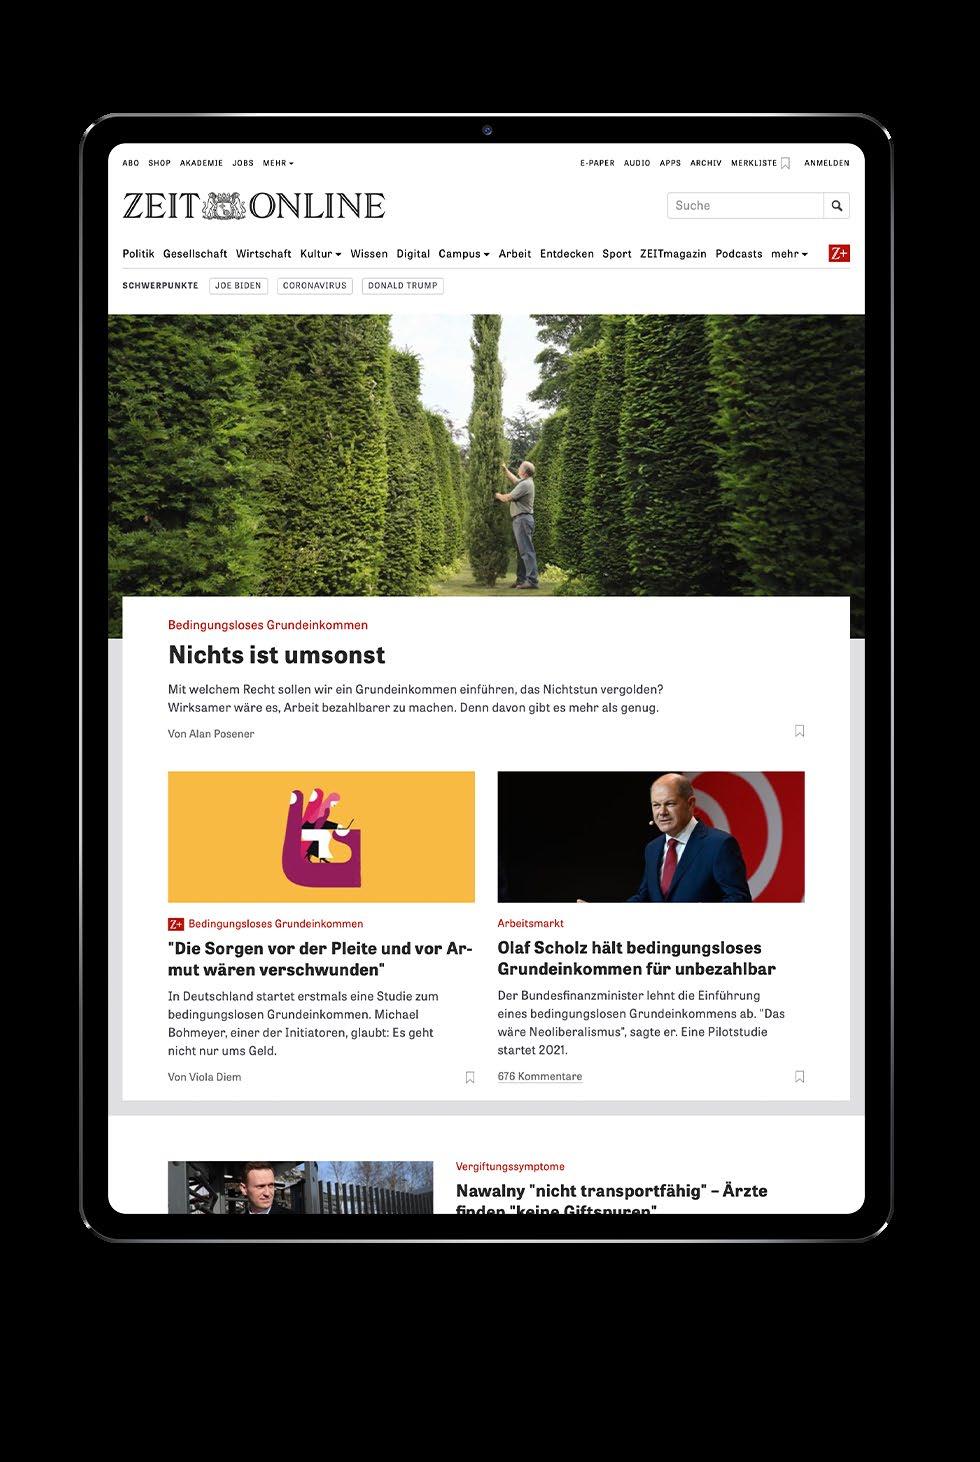 ZEIT ONLINE & Content Hubs Digital nachhaltige Trends verfolgen ZEIT ONLINE ist eines der größten Nachrichtenangebote Deutschlands und steht für einen einordnenden Qualitätsjournalismus mit höchstem